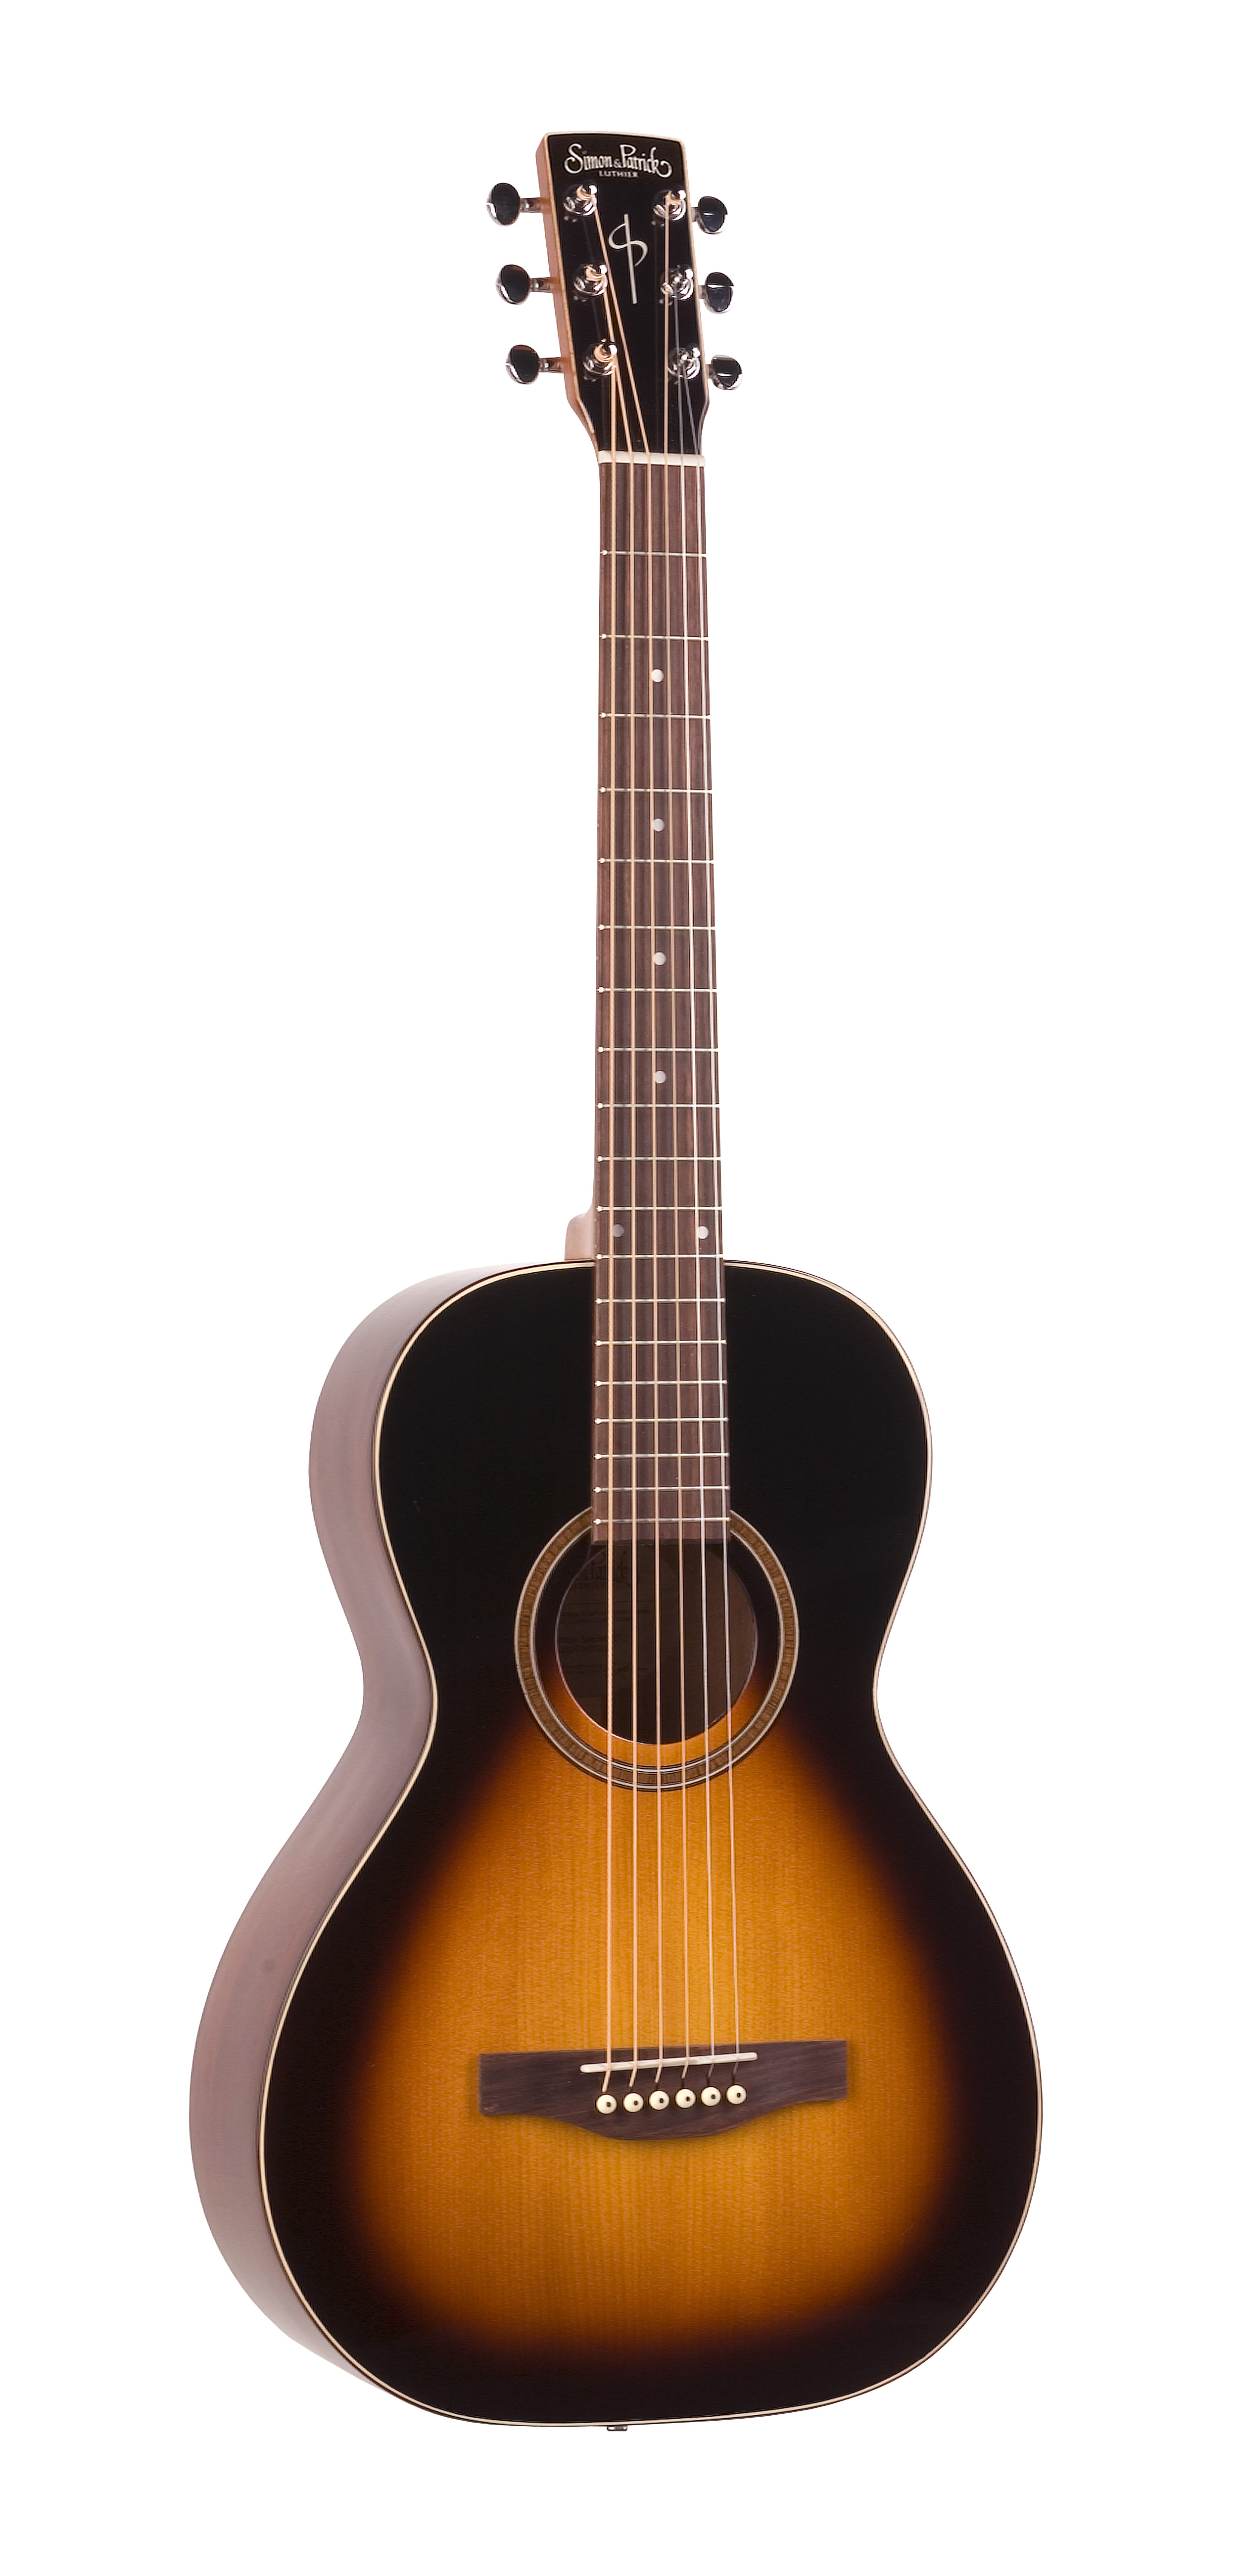 Simon & Patrick 35151 Woodland Pro Parlor Sunburst Acoustic Guitar